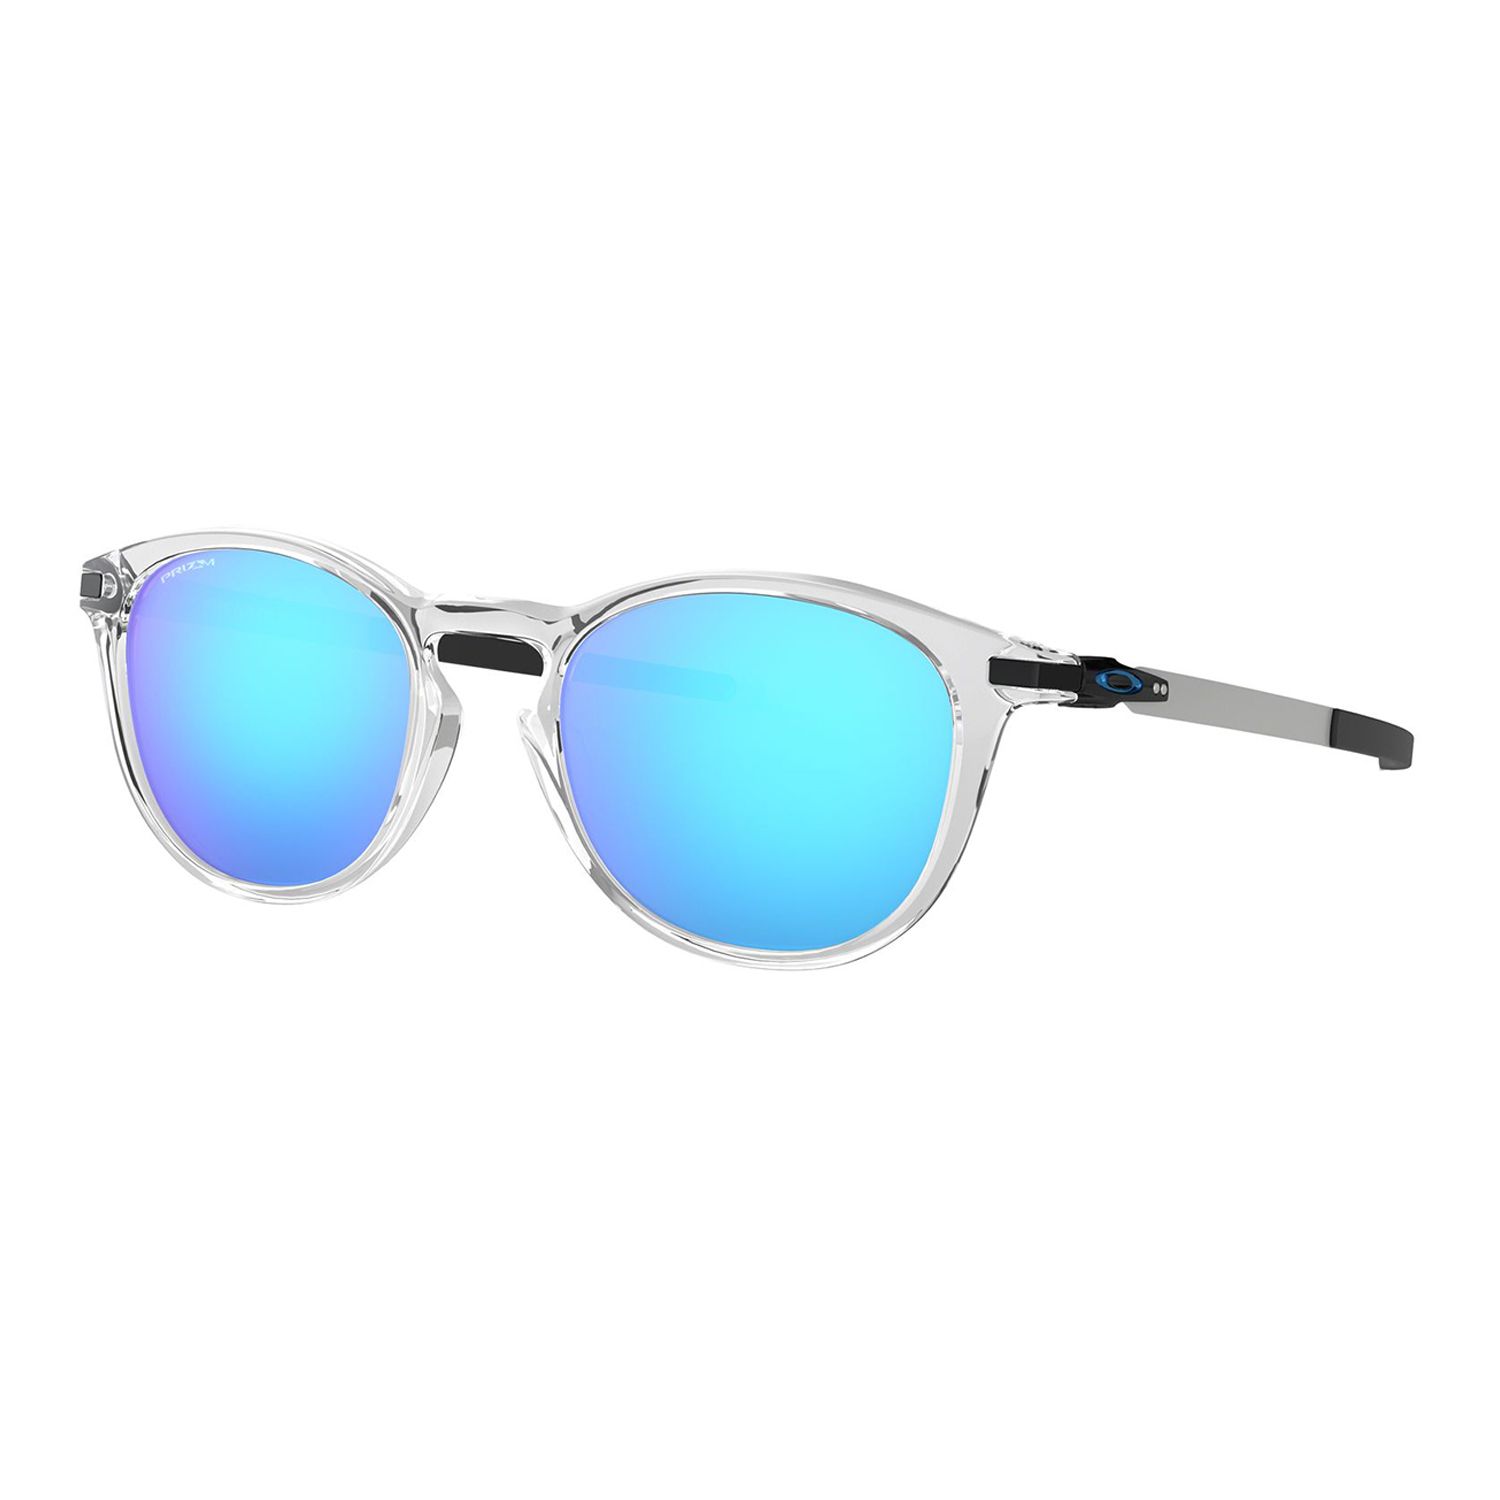 oakley mirrored sunglasses,cheap - OFF 64% 